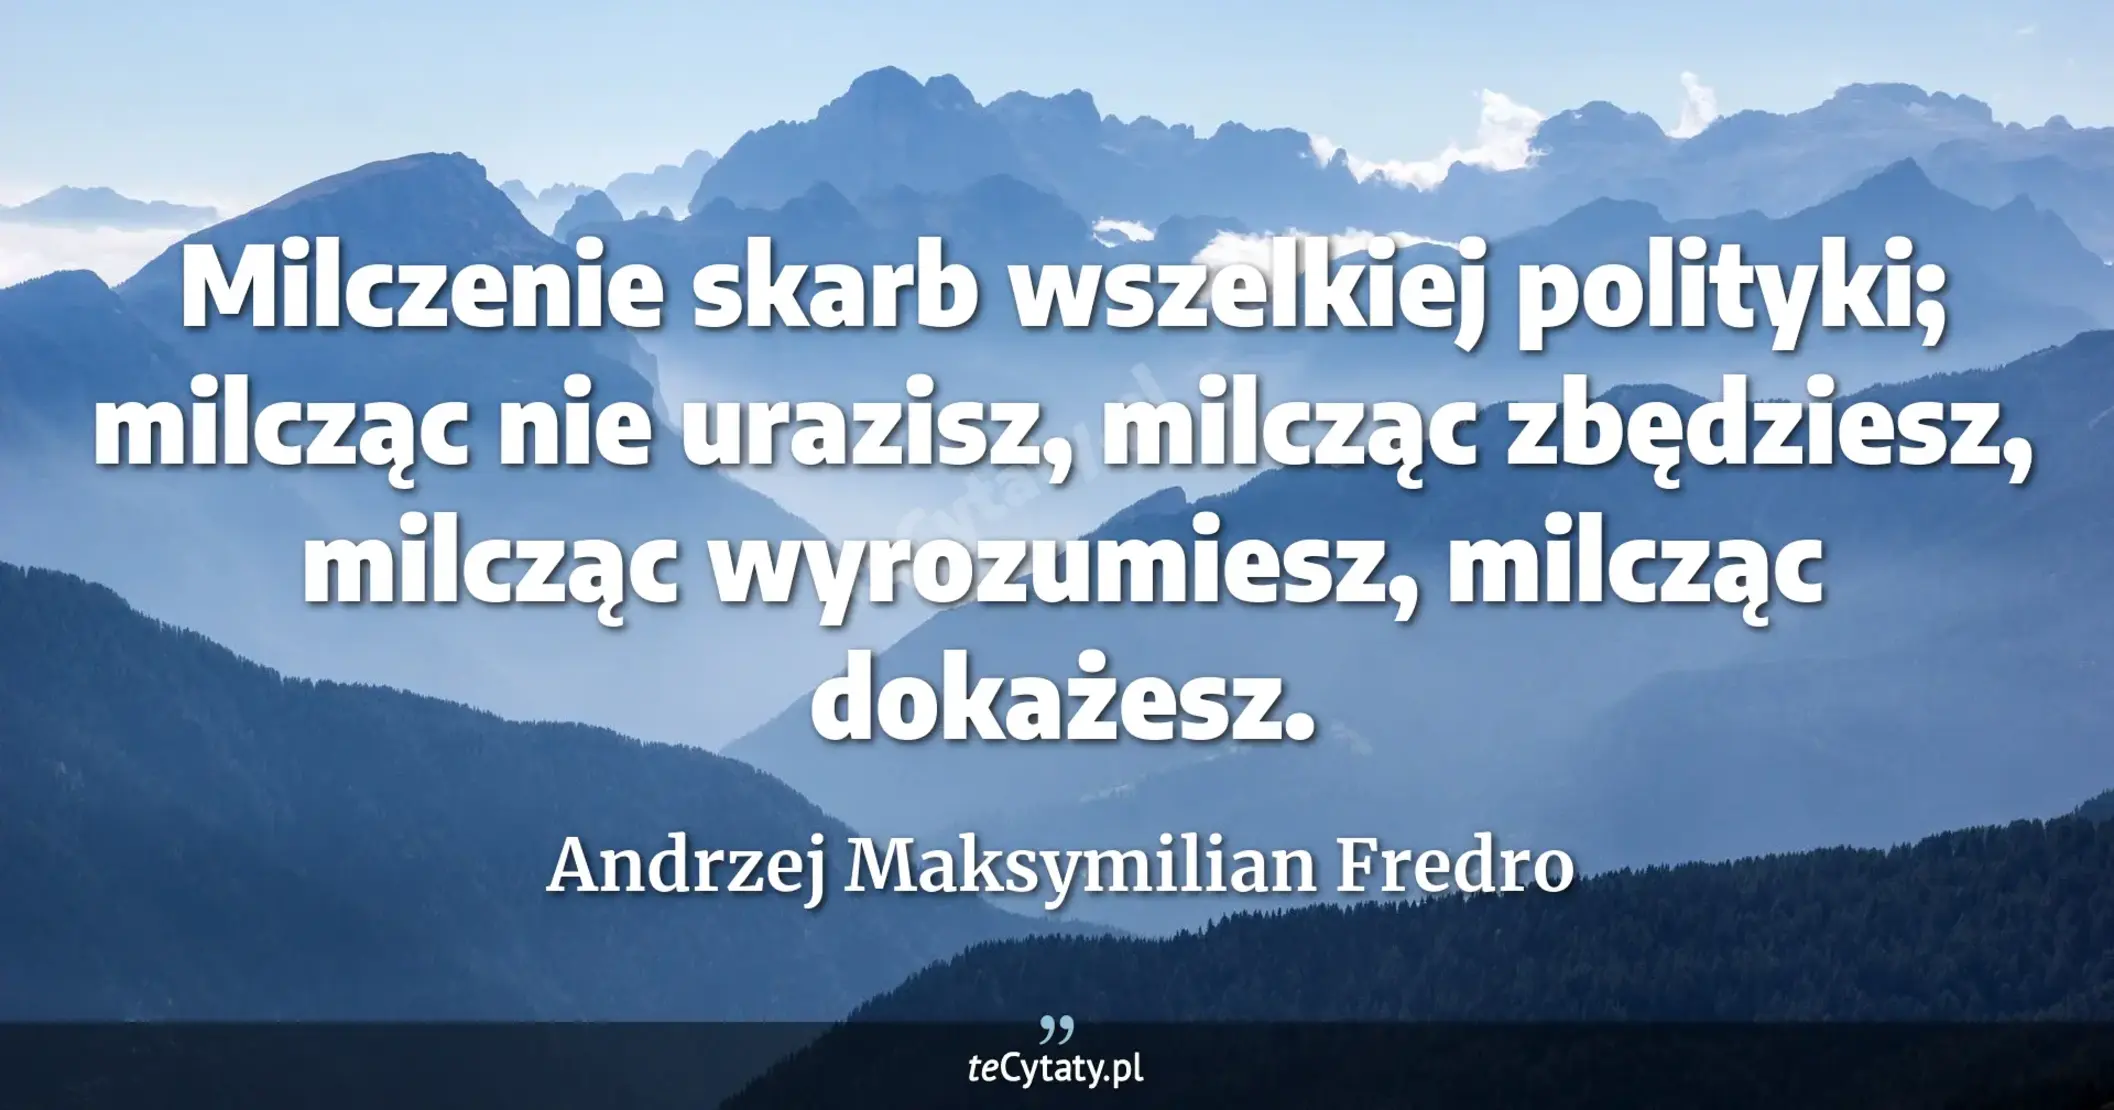 Milczenie skarb wszelkiej polityki; milcząc nie urazisz, milcząc zbędziesz, milcząc wyrozumiesz, milcząc dokażesz. - Andrzej Maksymilian Fredro